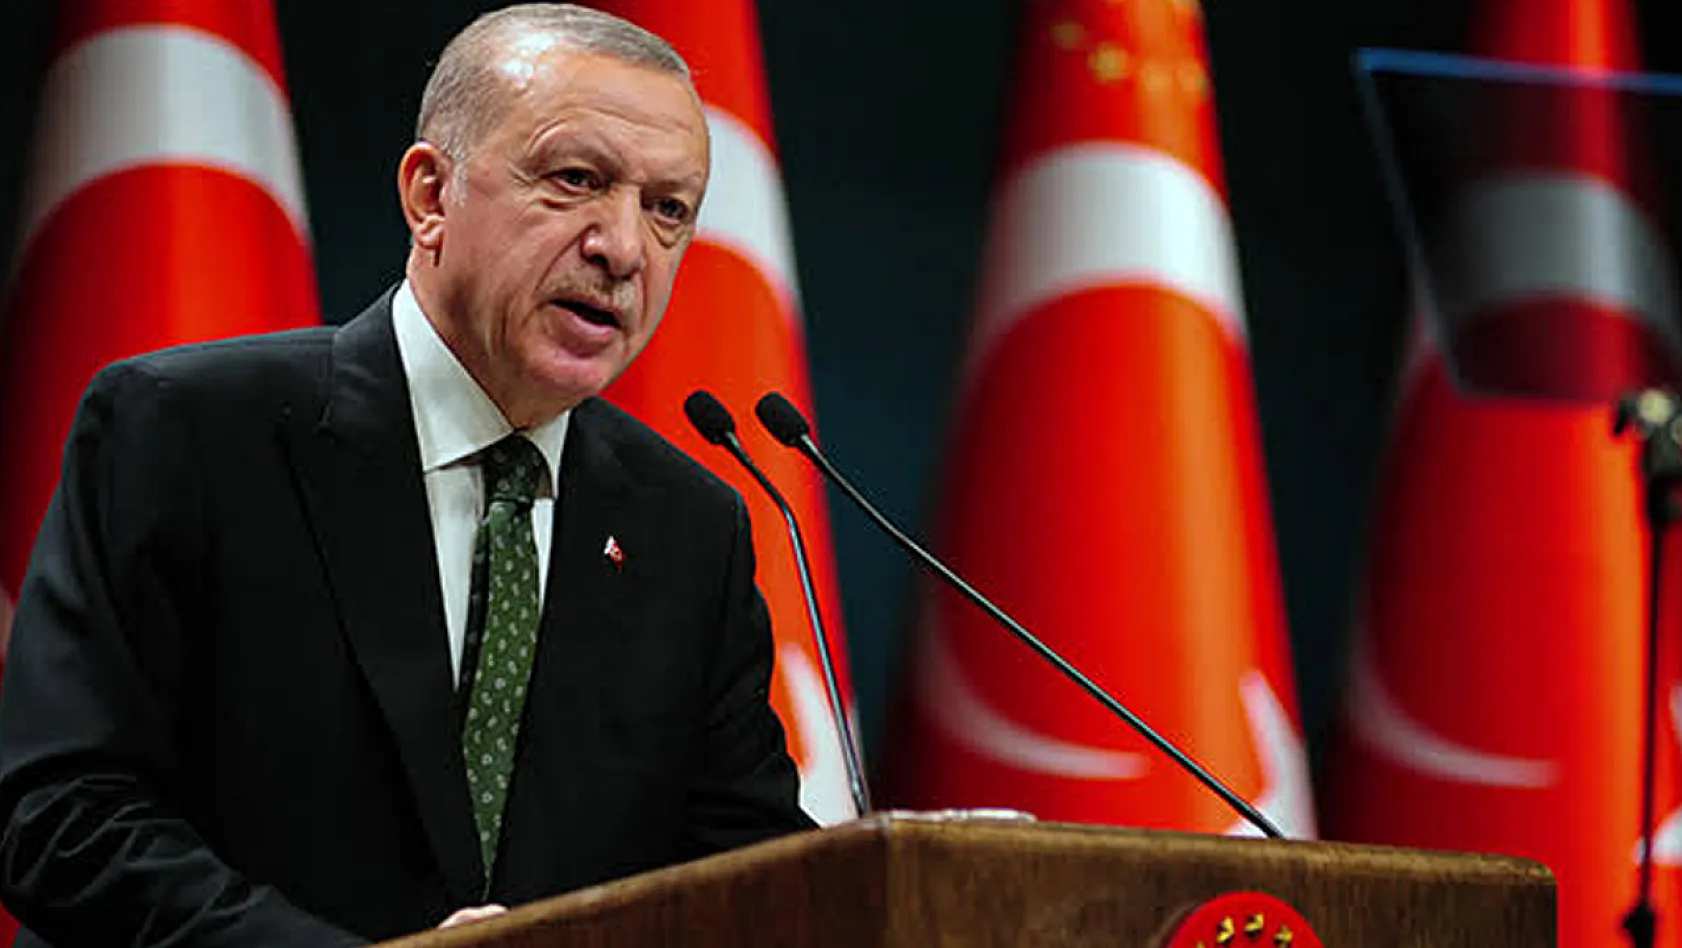 Cumhurbaşkanı Erdoğan'dan Emeklilere Zam Açıklaması